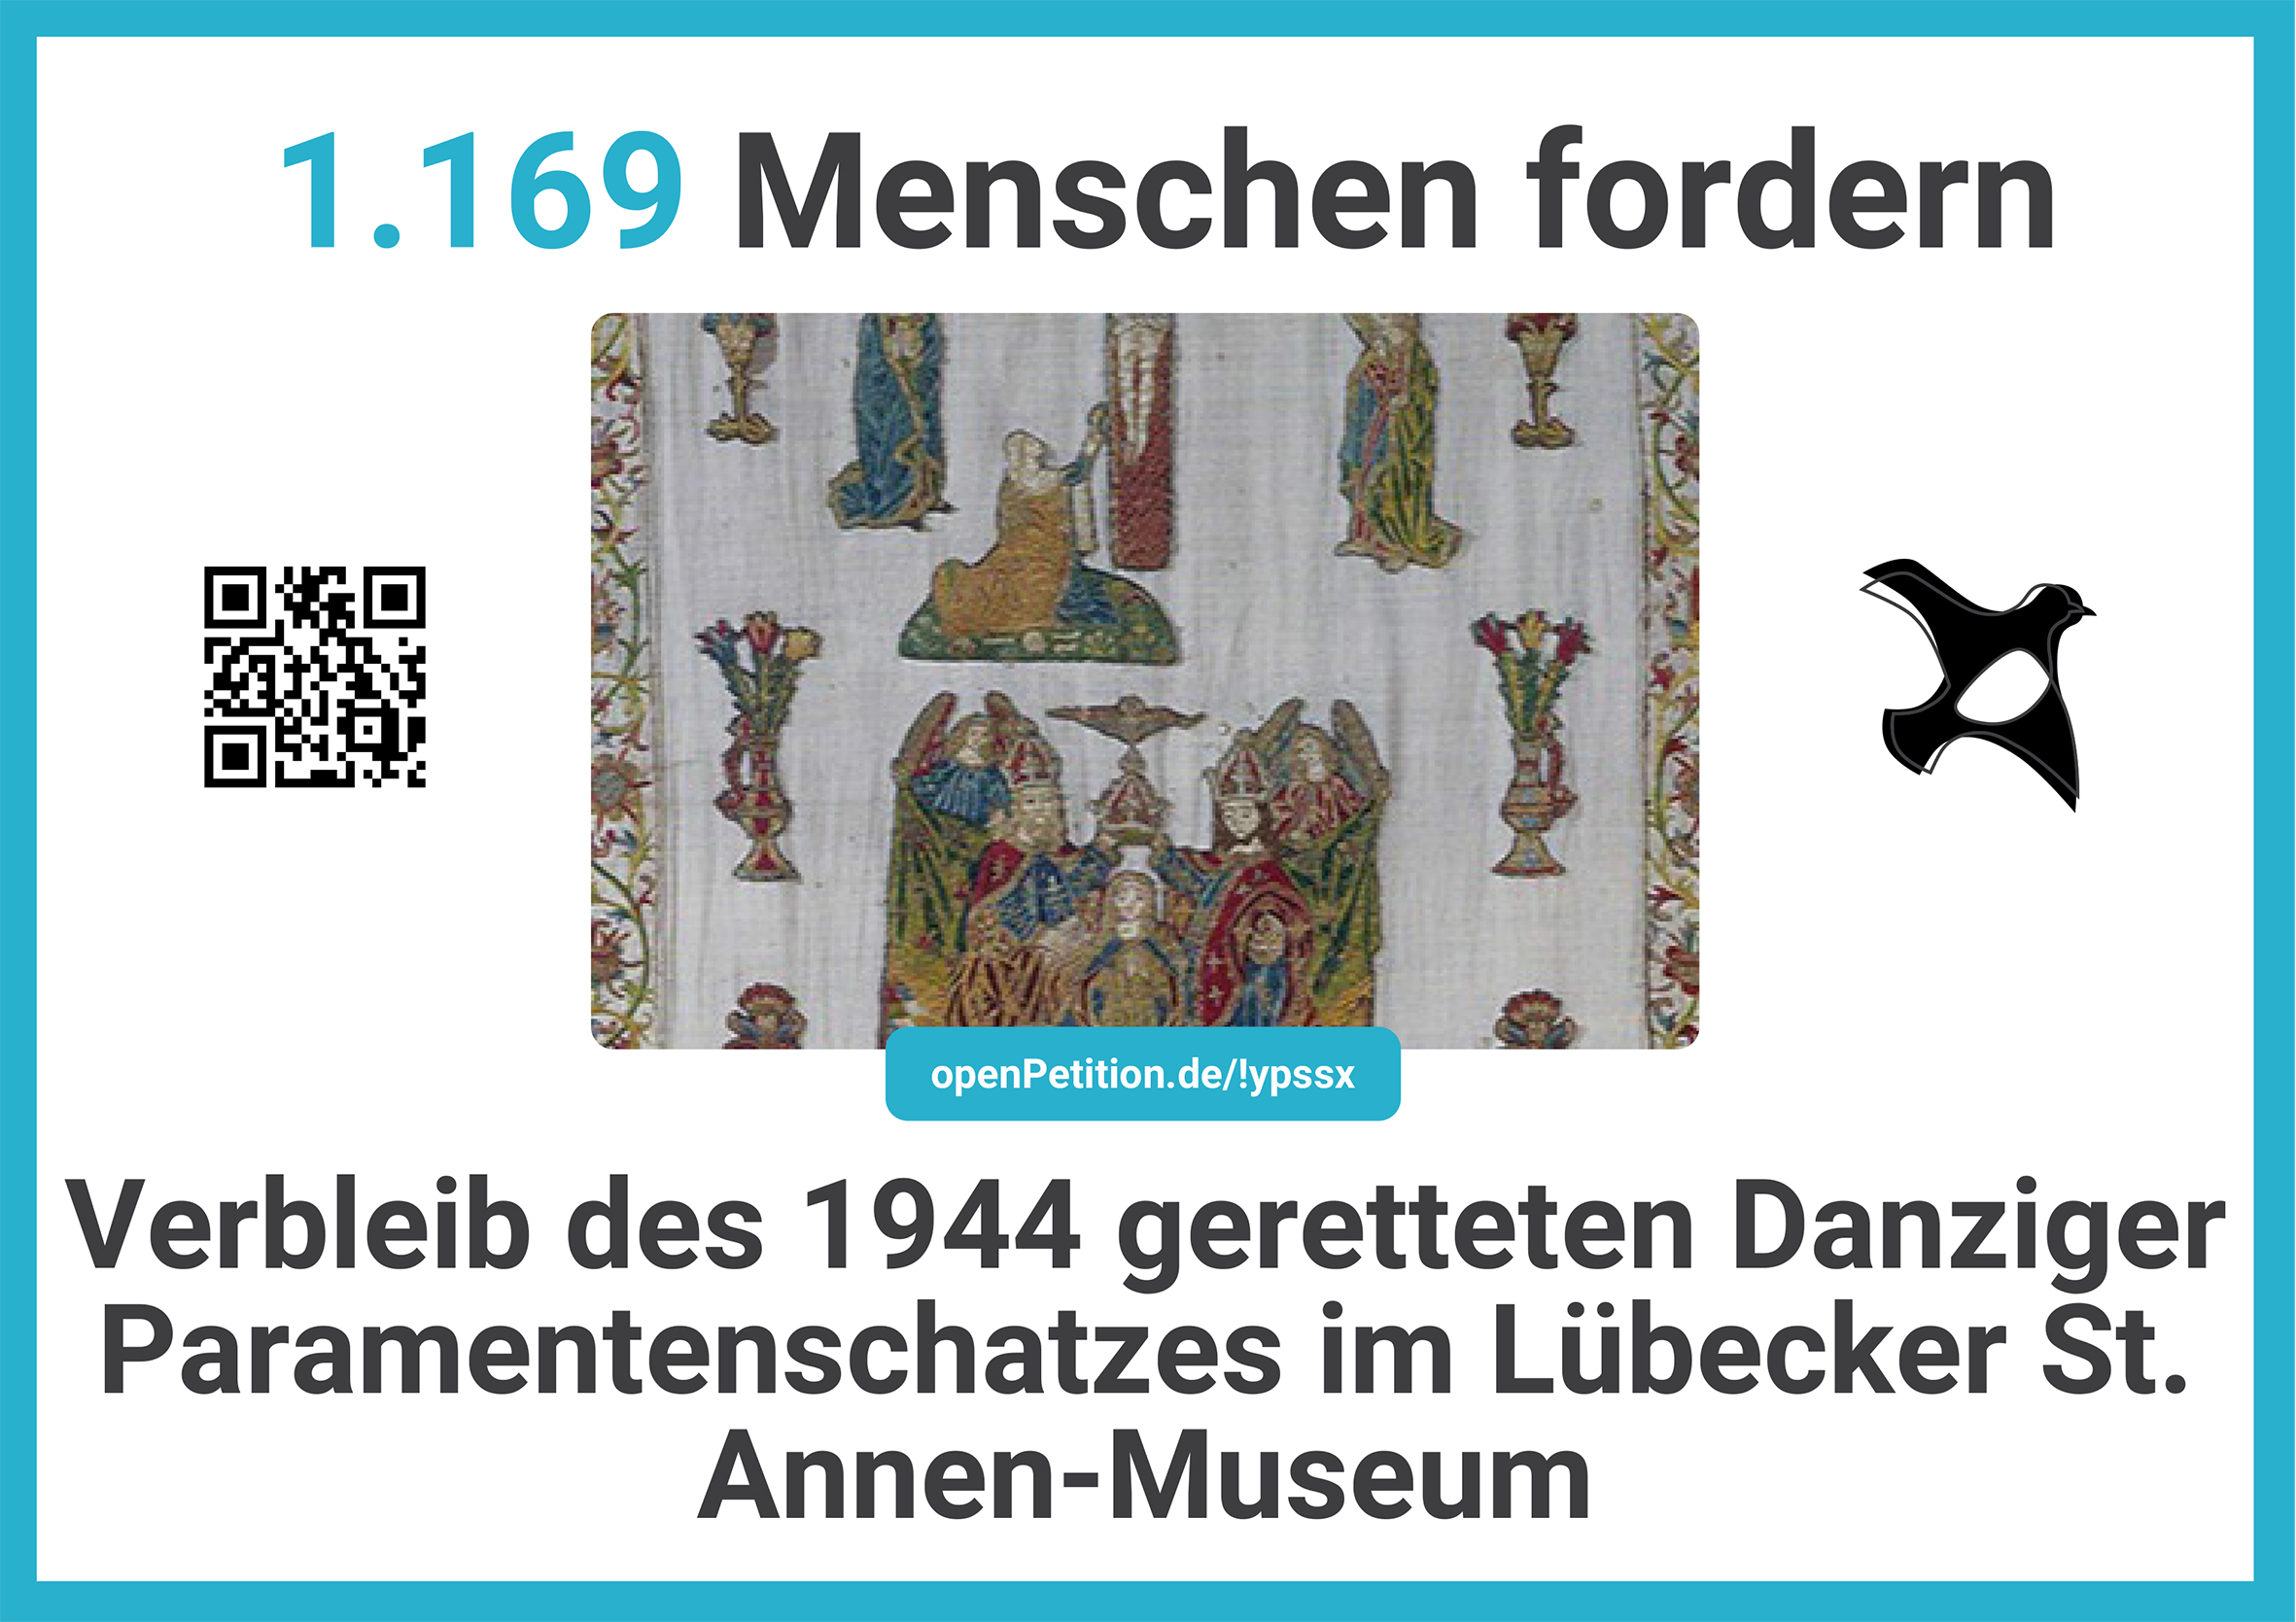 bergabeposter_verbleib-des-1944-geretteten-danziger-paramentenschatzes-im-luebecker-st-annen-museum_A4